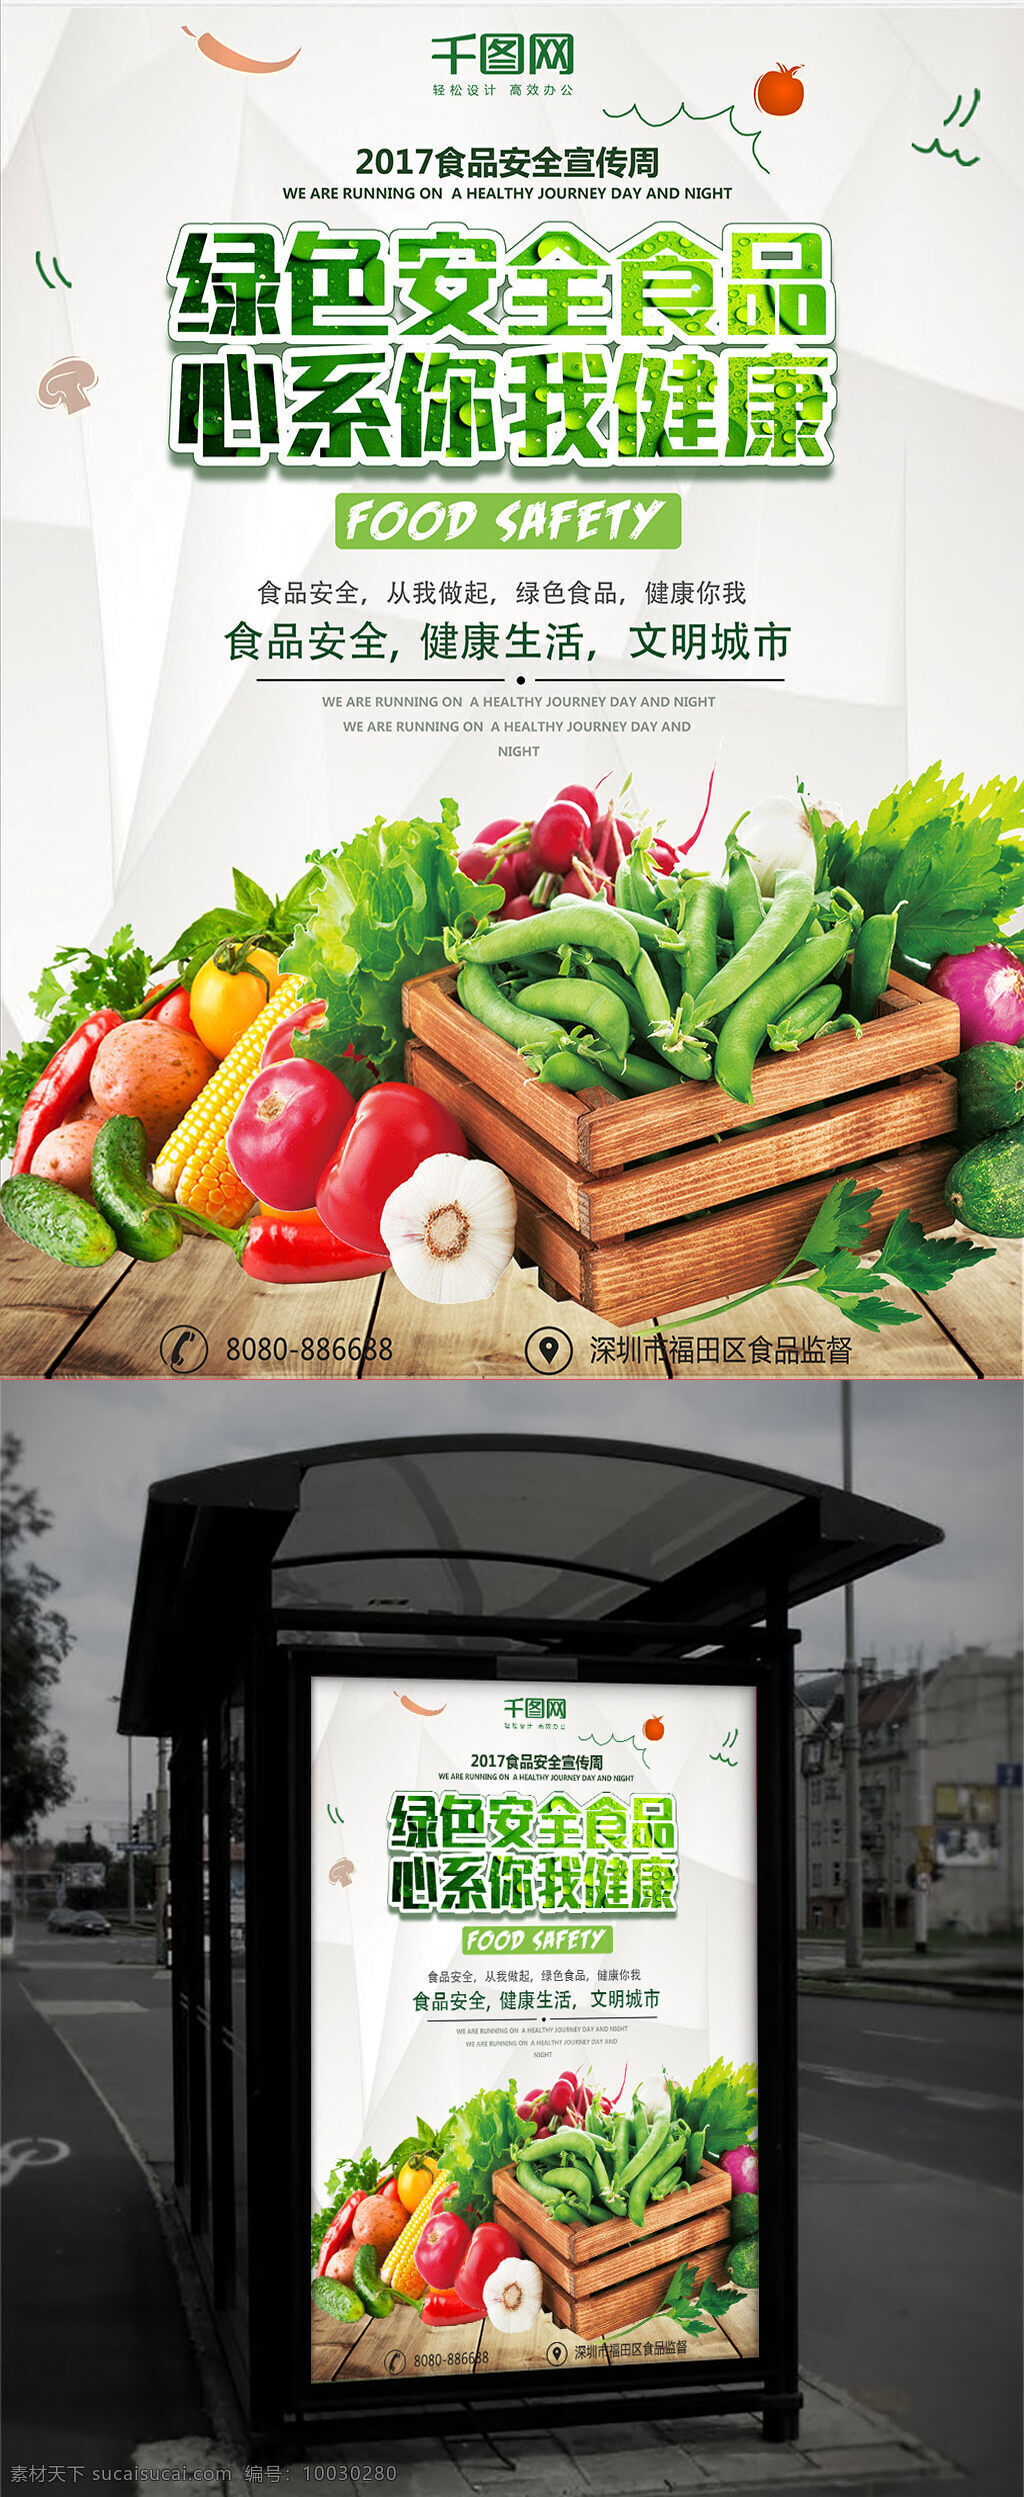 食品安全 文明 城市 公益 海报 食品 安全 公益海报 健康 绿色 生活 宣传 蔬菜 水果 环保 卫生